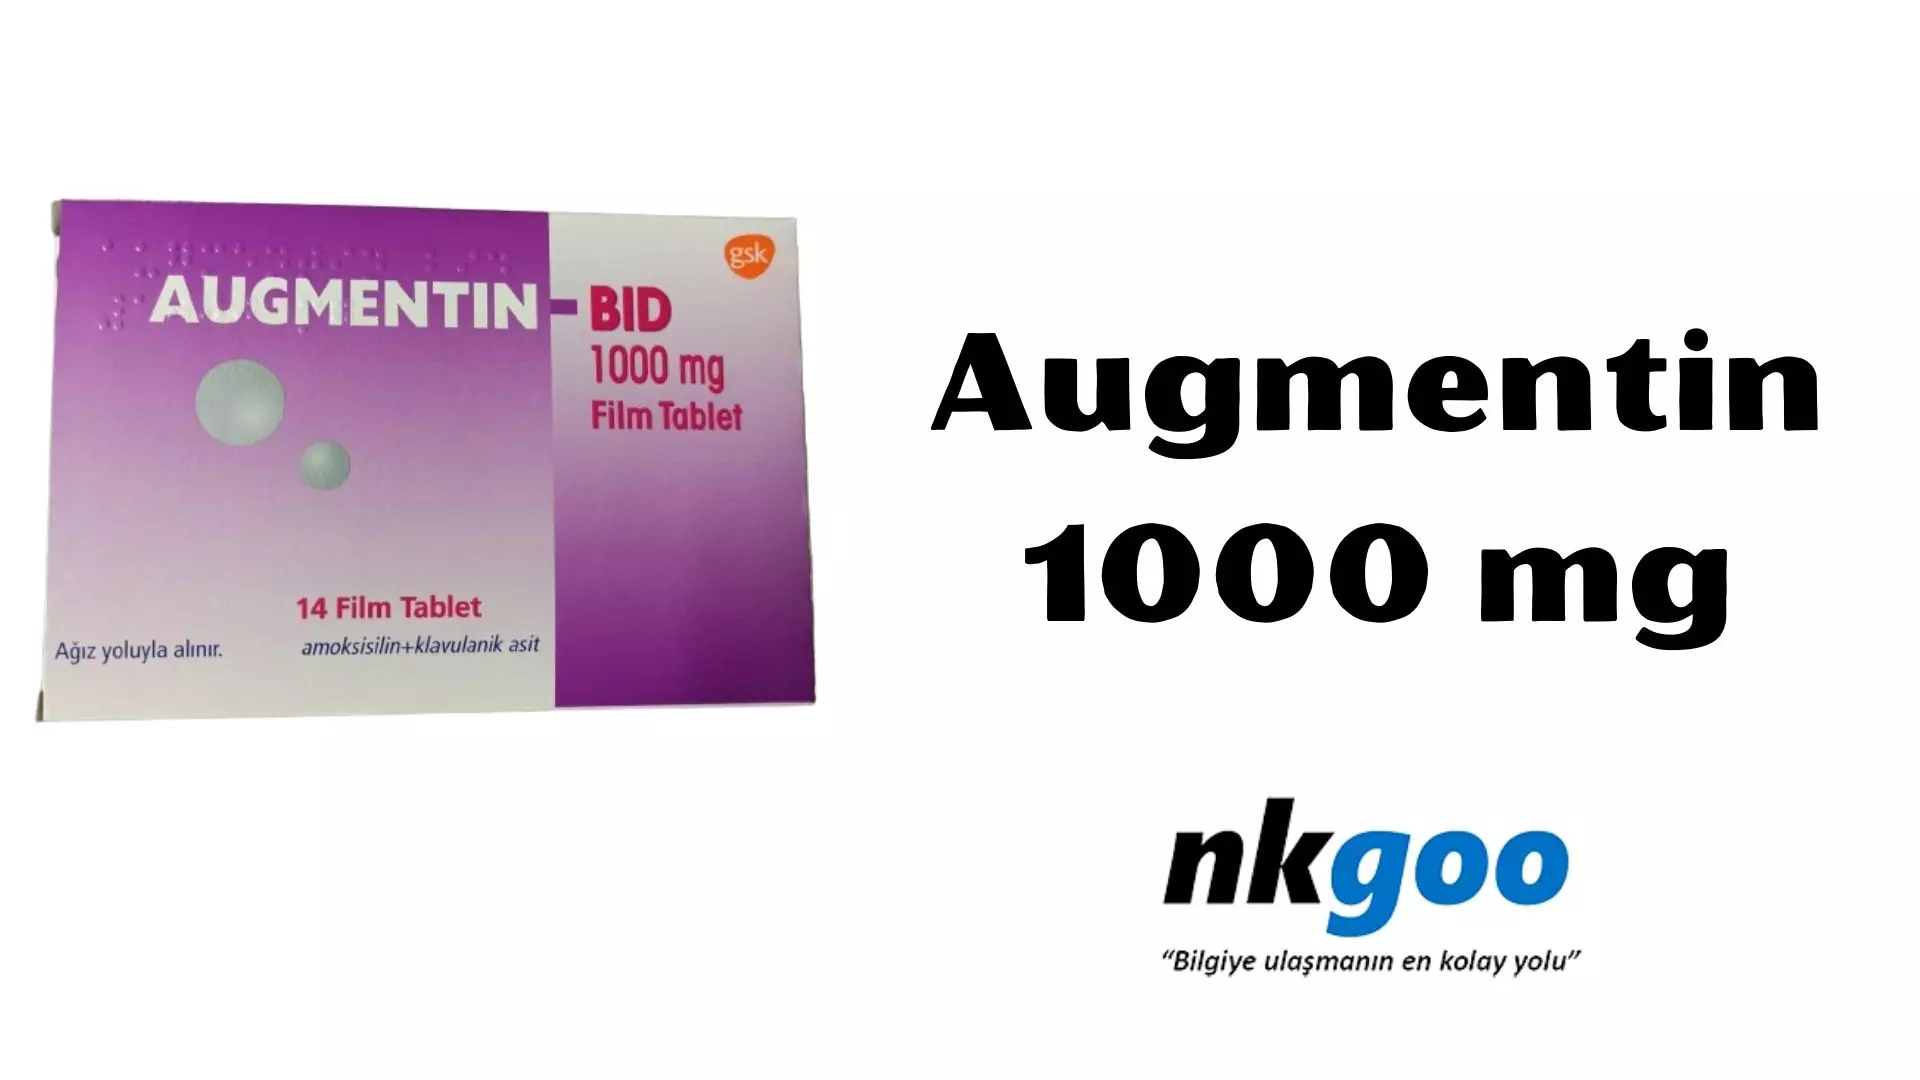 Augmentin bid 1000 mg fiyat